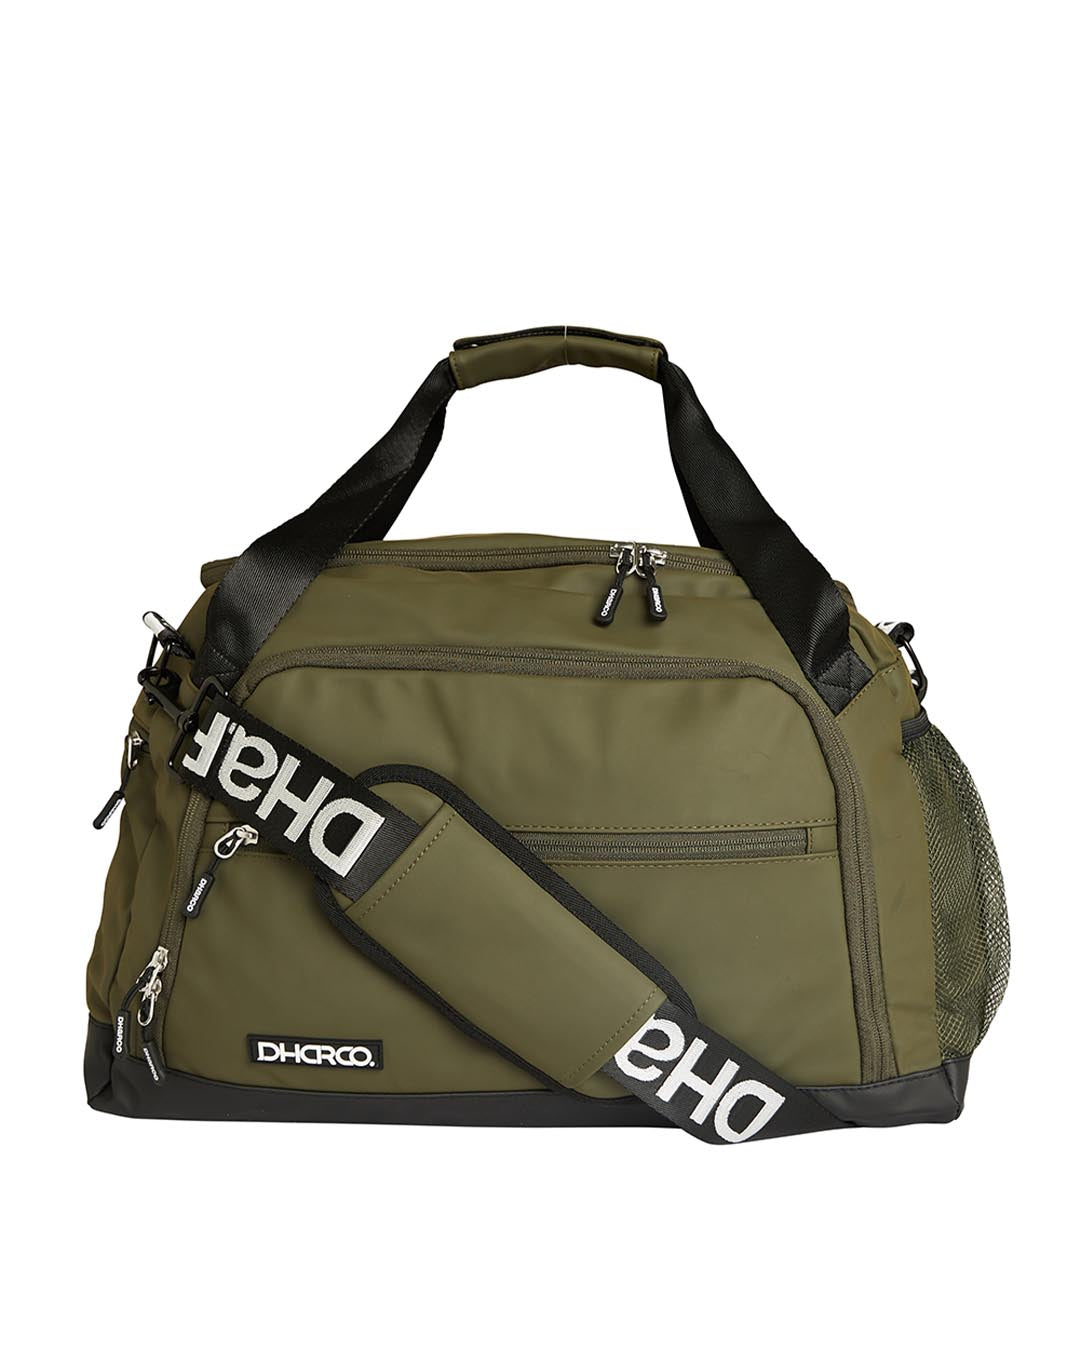 30L Duffle Bag | Camo